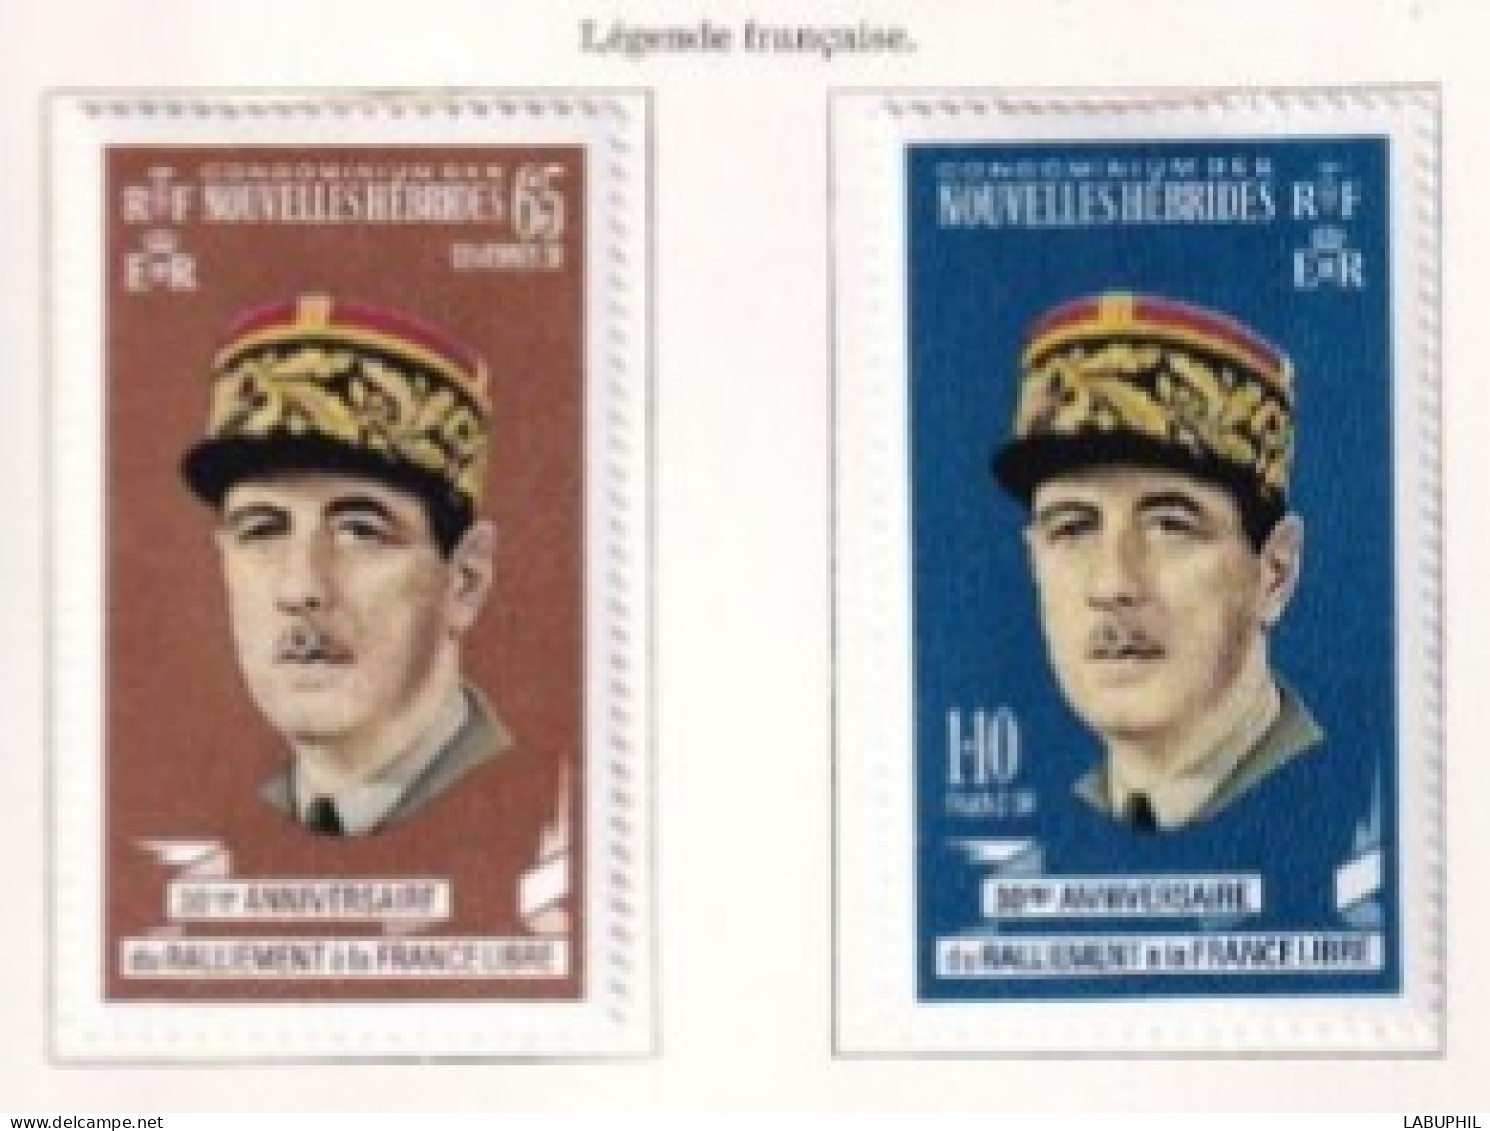 NOUVELLES HEBRIDES Dispersion D'une Collection Oblitéré Et Mlh  1970 - Used Stamps